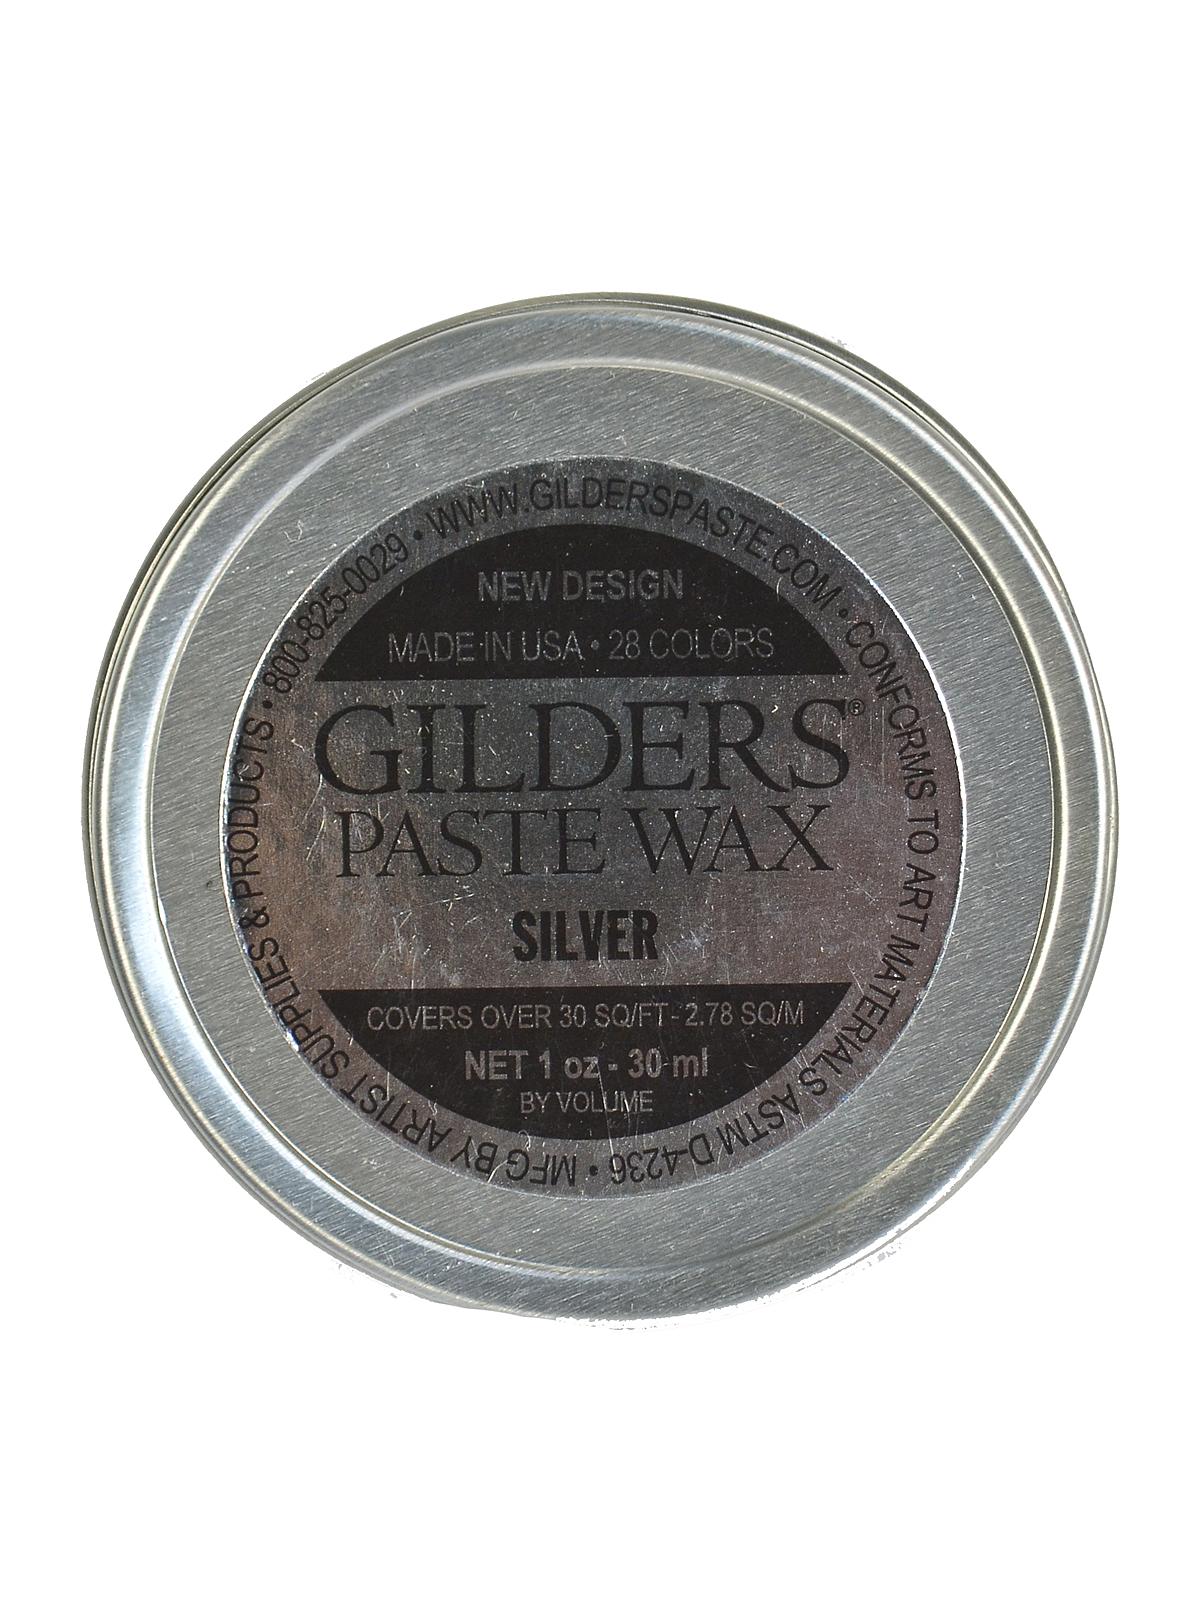 Gilder's Paste Wax Silver 1 Oz. Tin